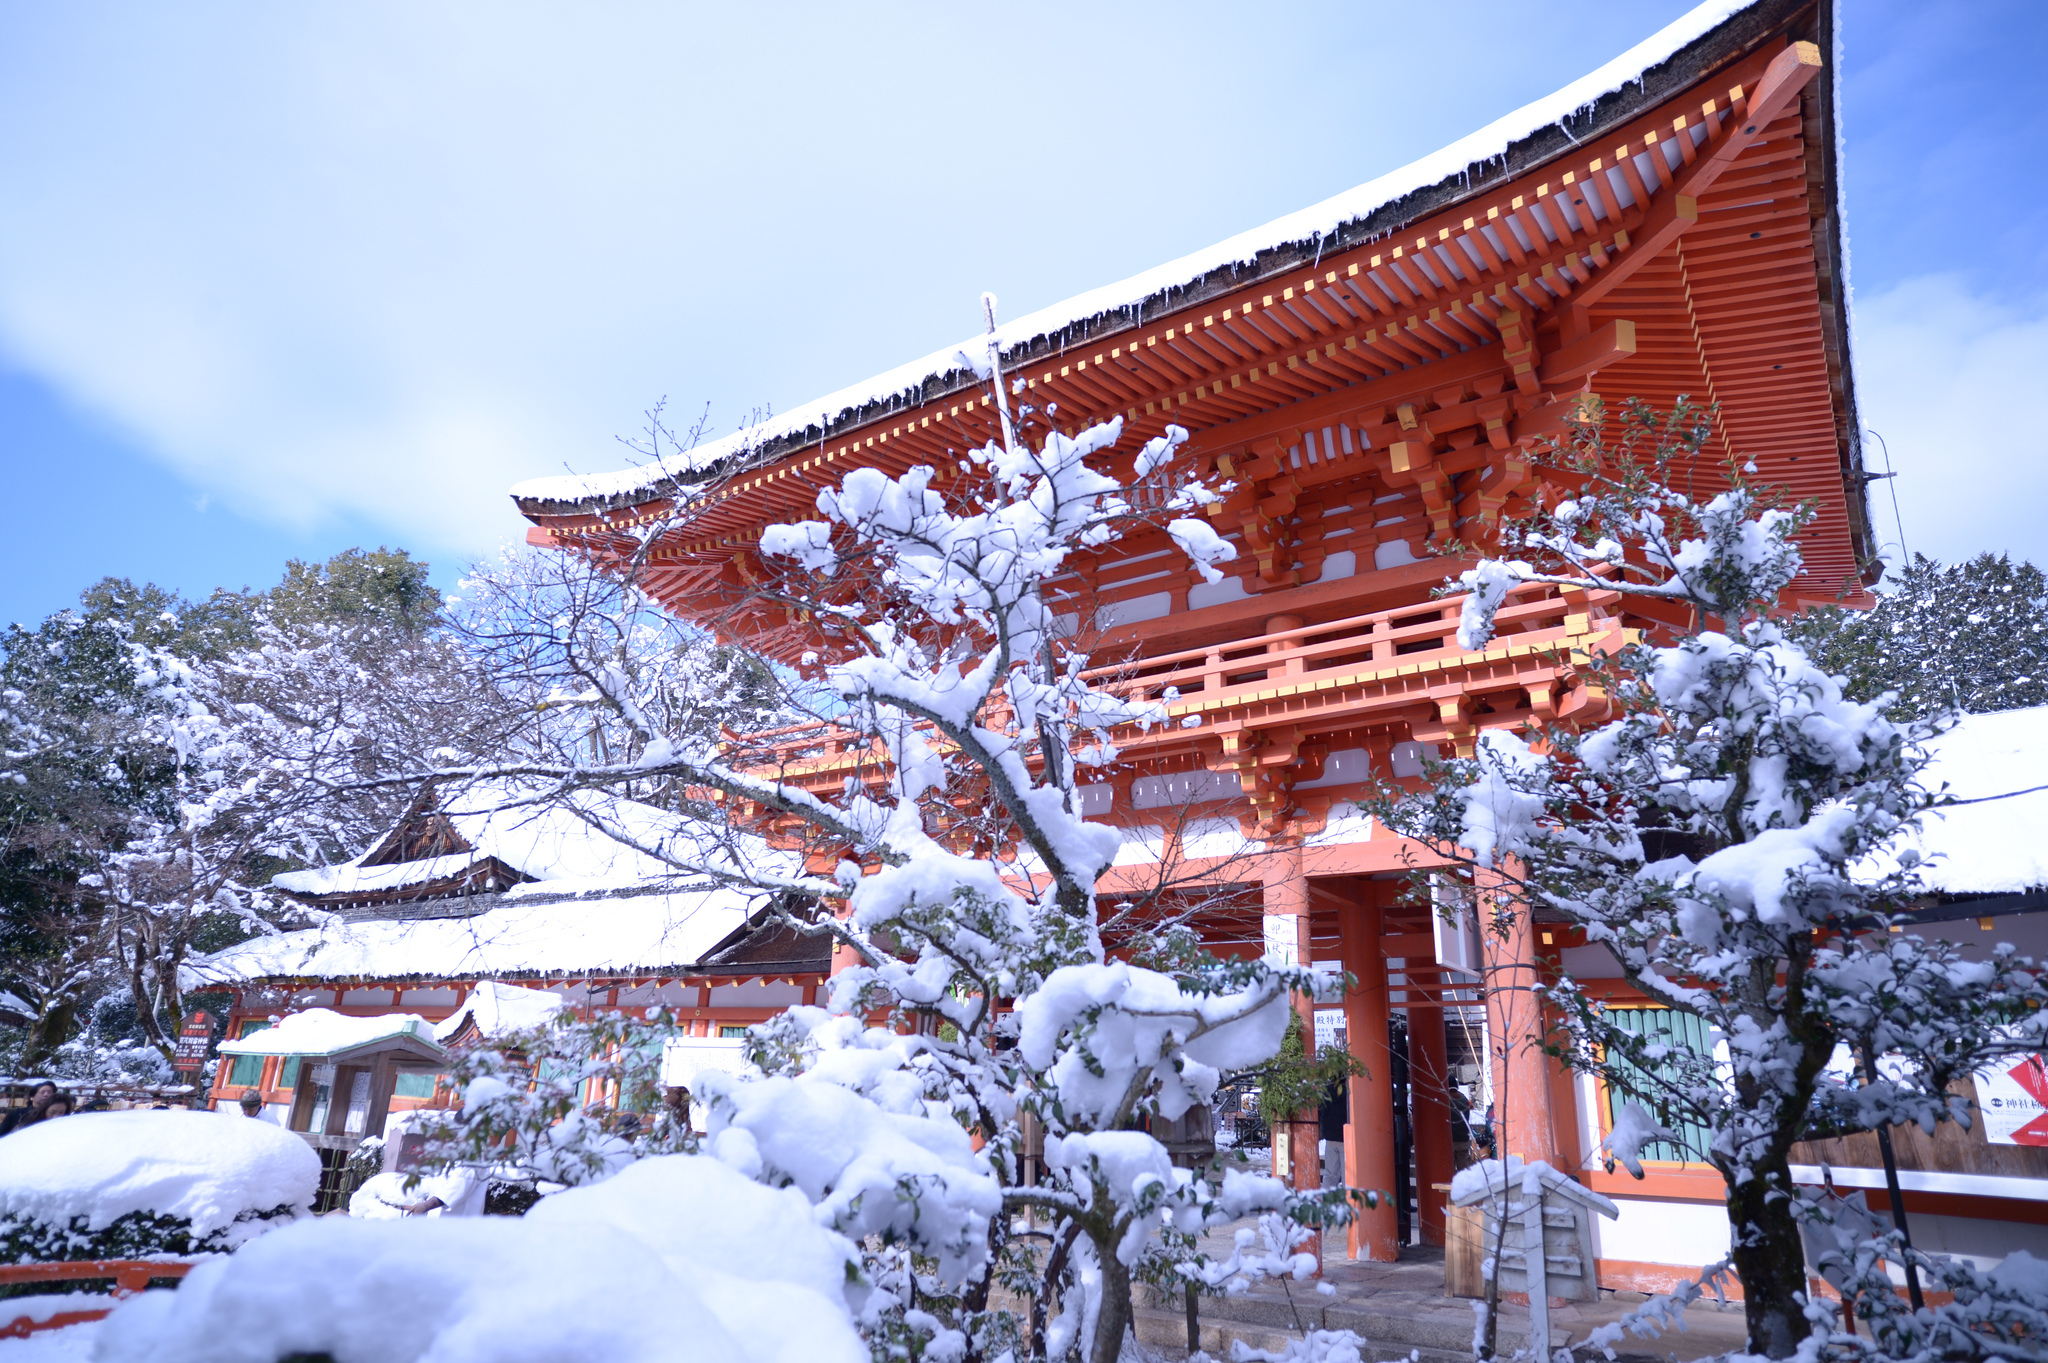 Japan in winter